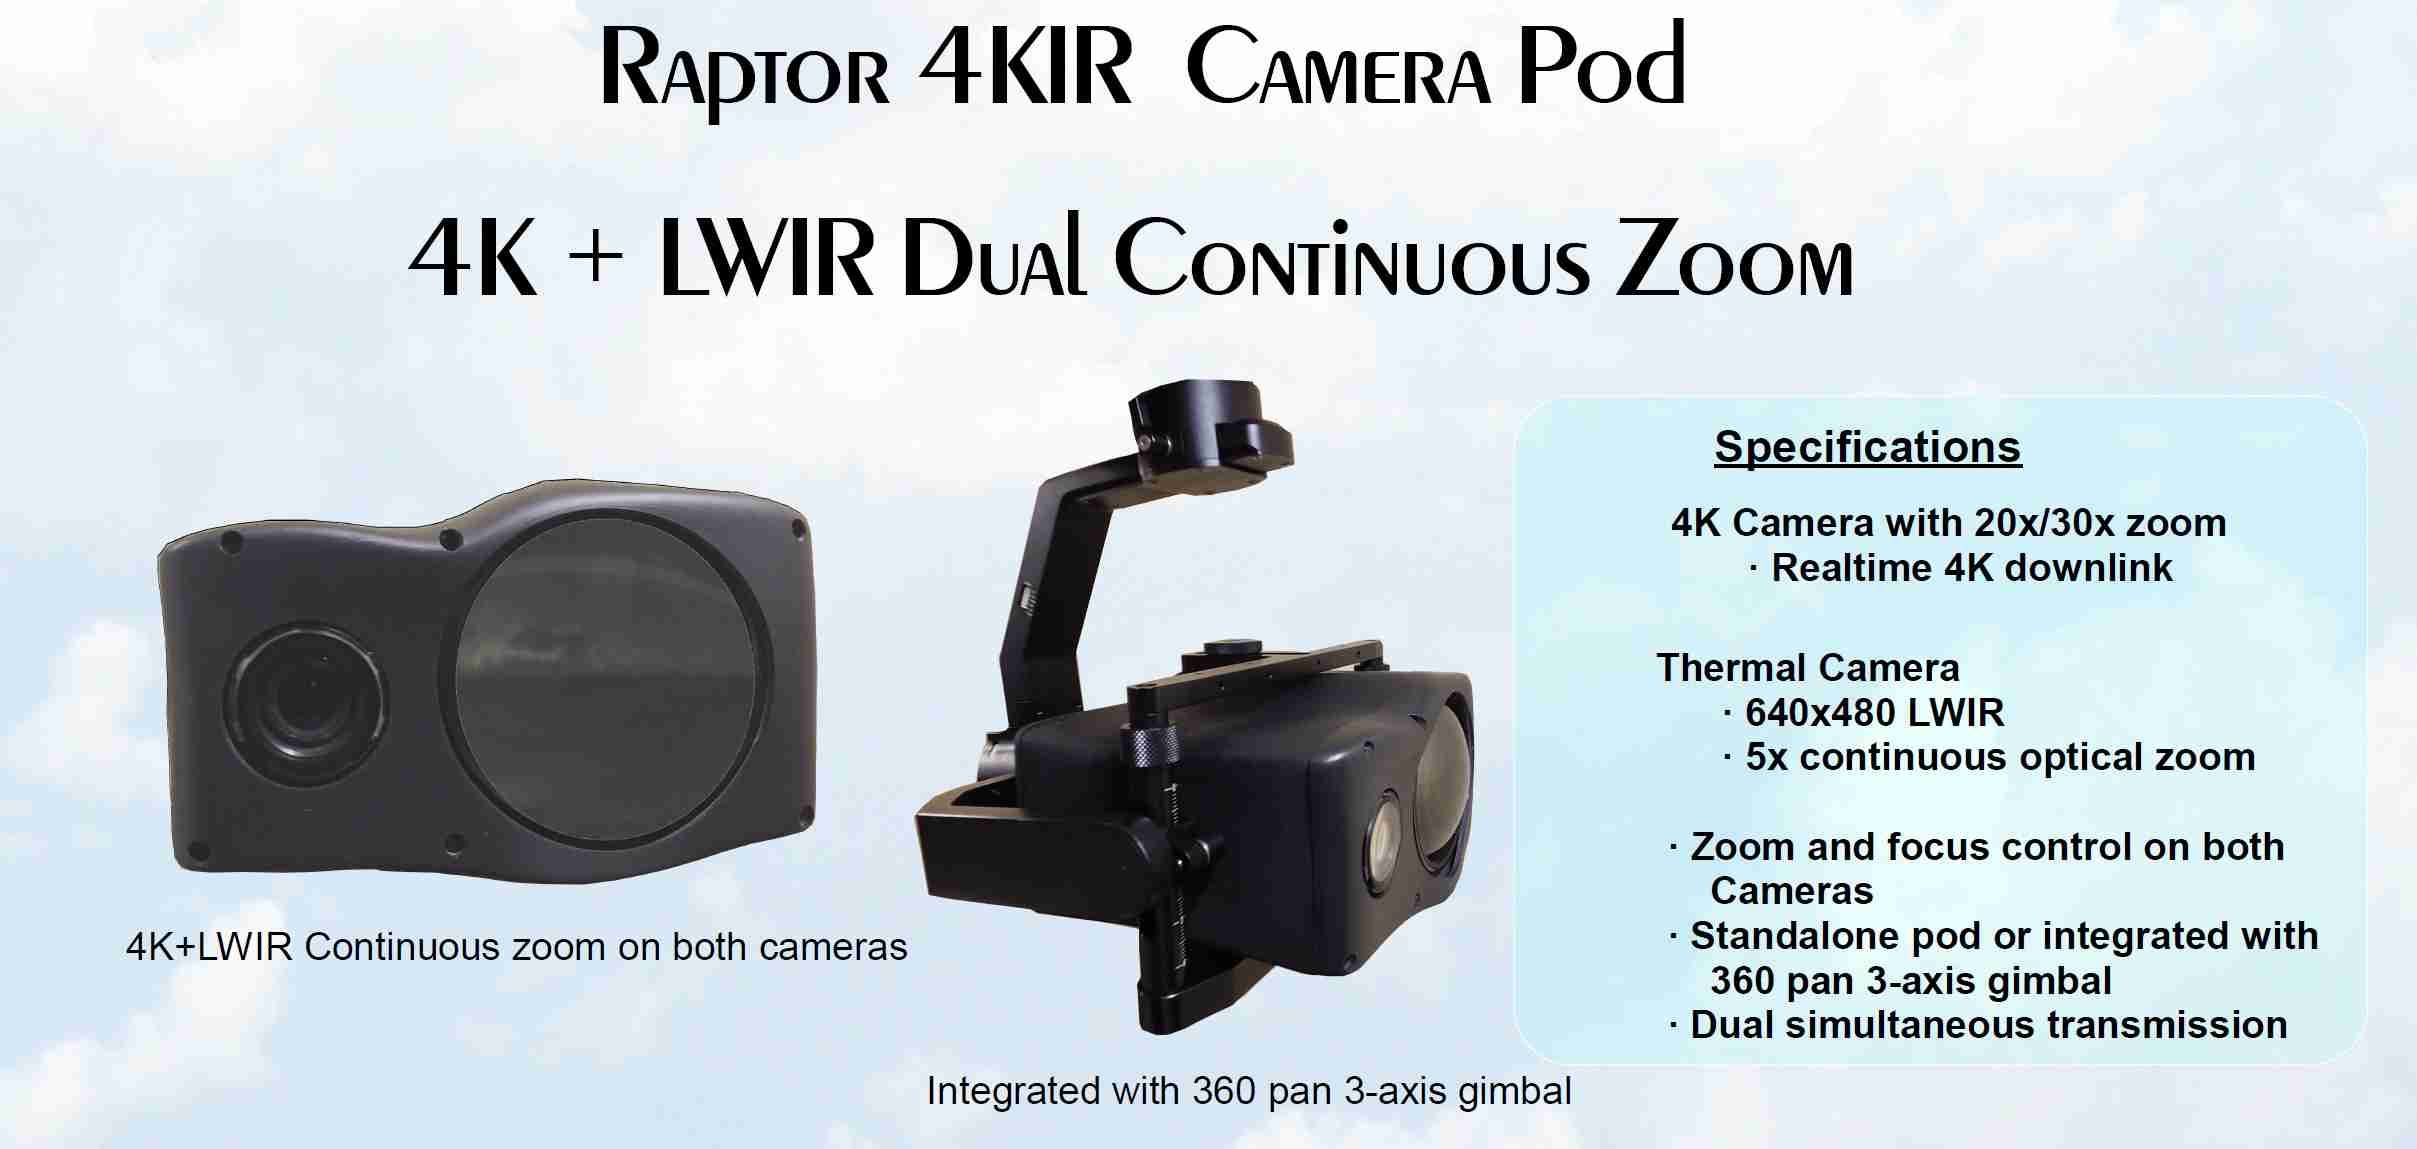 Raptor 4KIR dual zoom 4K + Thermal LWIR camera payload